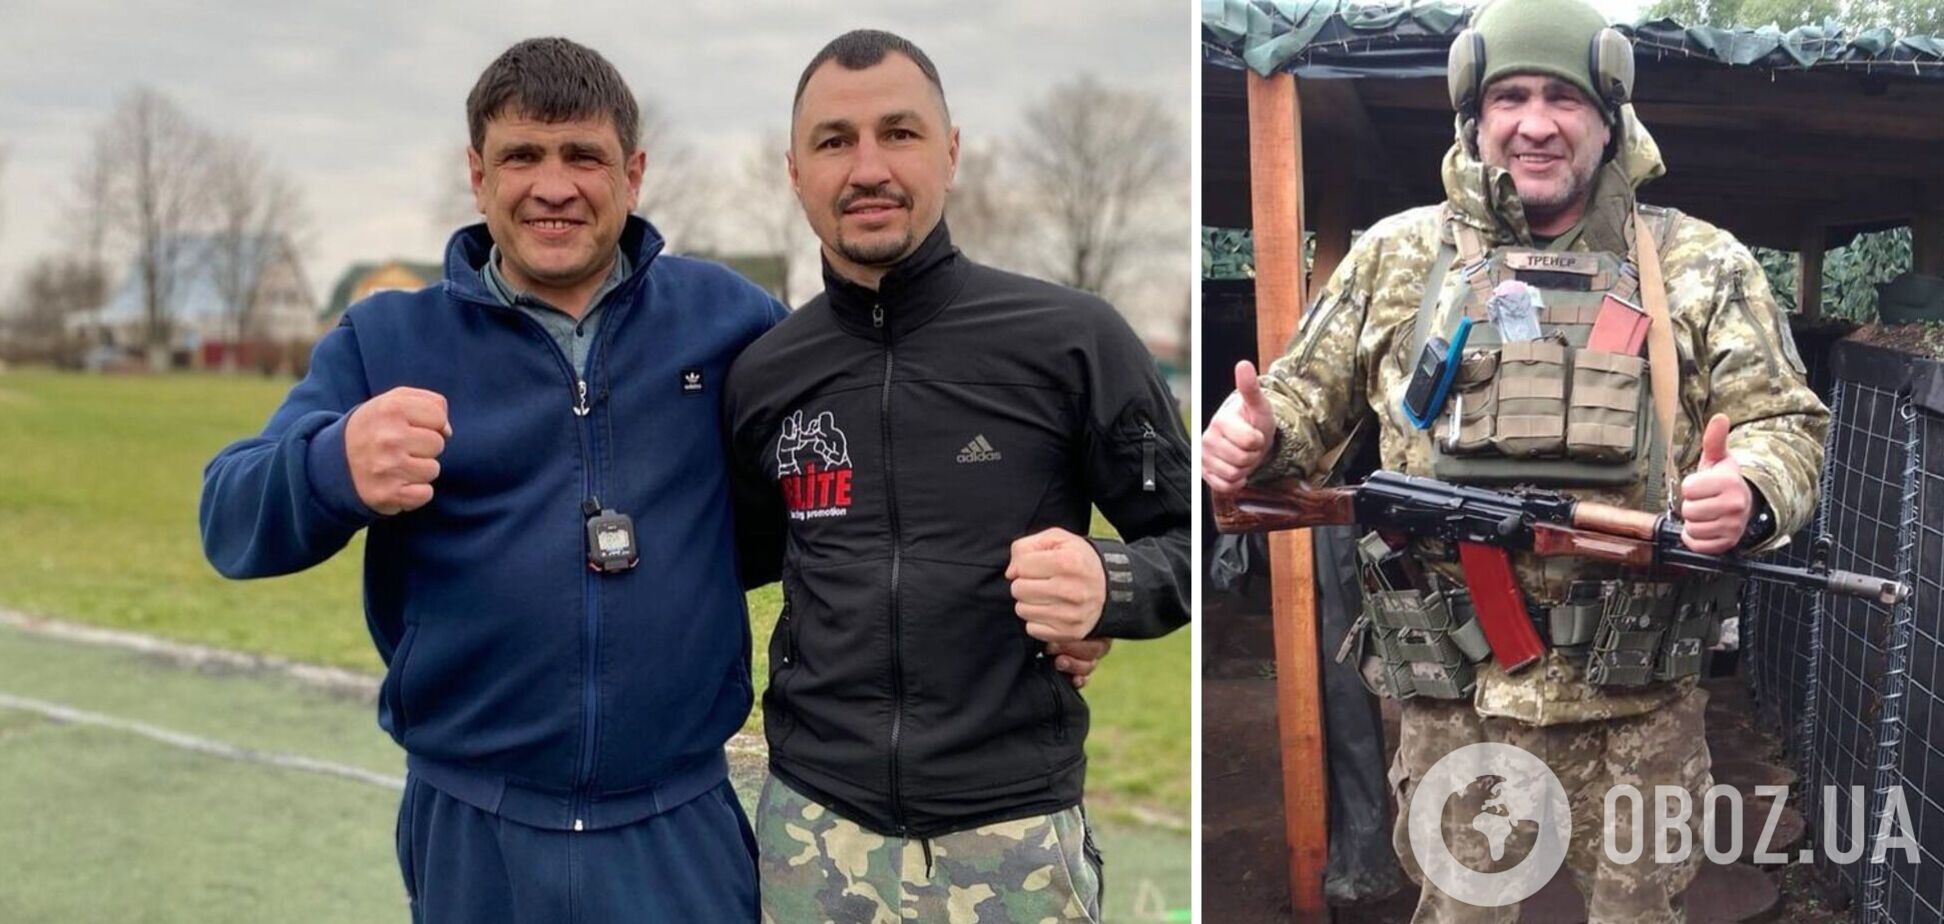 'Три недели реанимации': первый тренер украинского чемпиона мира по боксу получил тяжелое ранение